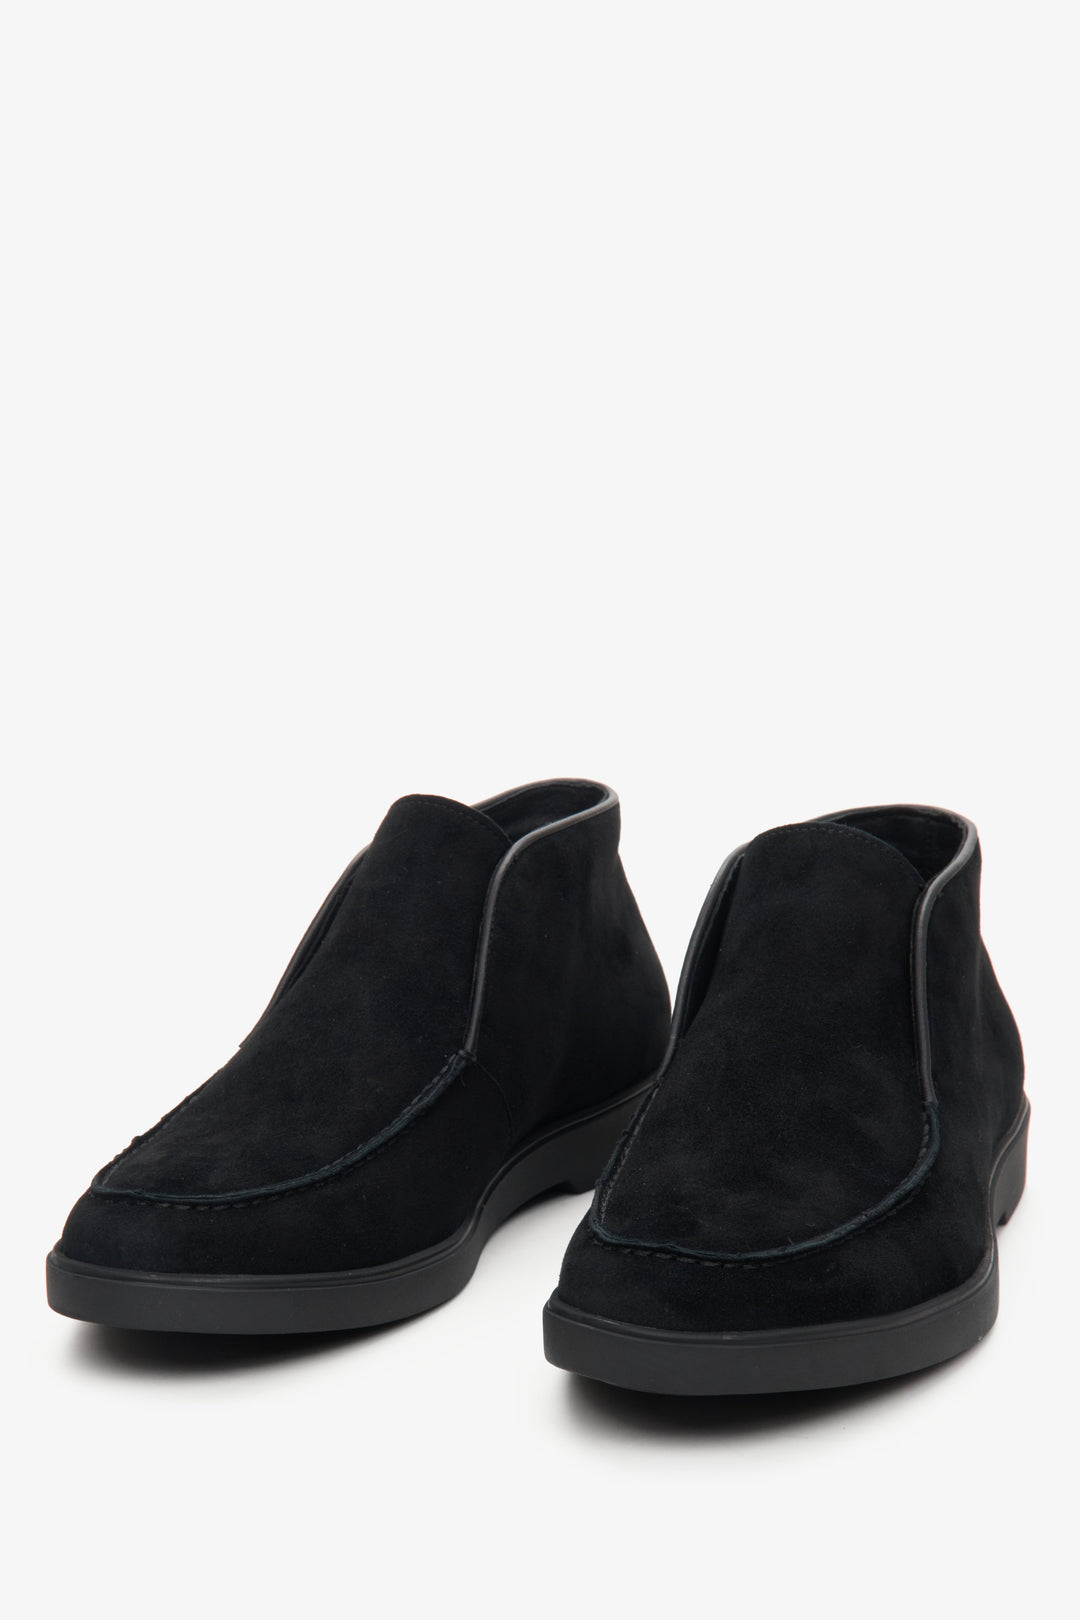 Męskie czarne botki z weluru naturalnego w kolorze czarnym - zbliżenie na czubek buta.